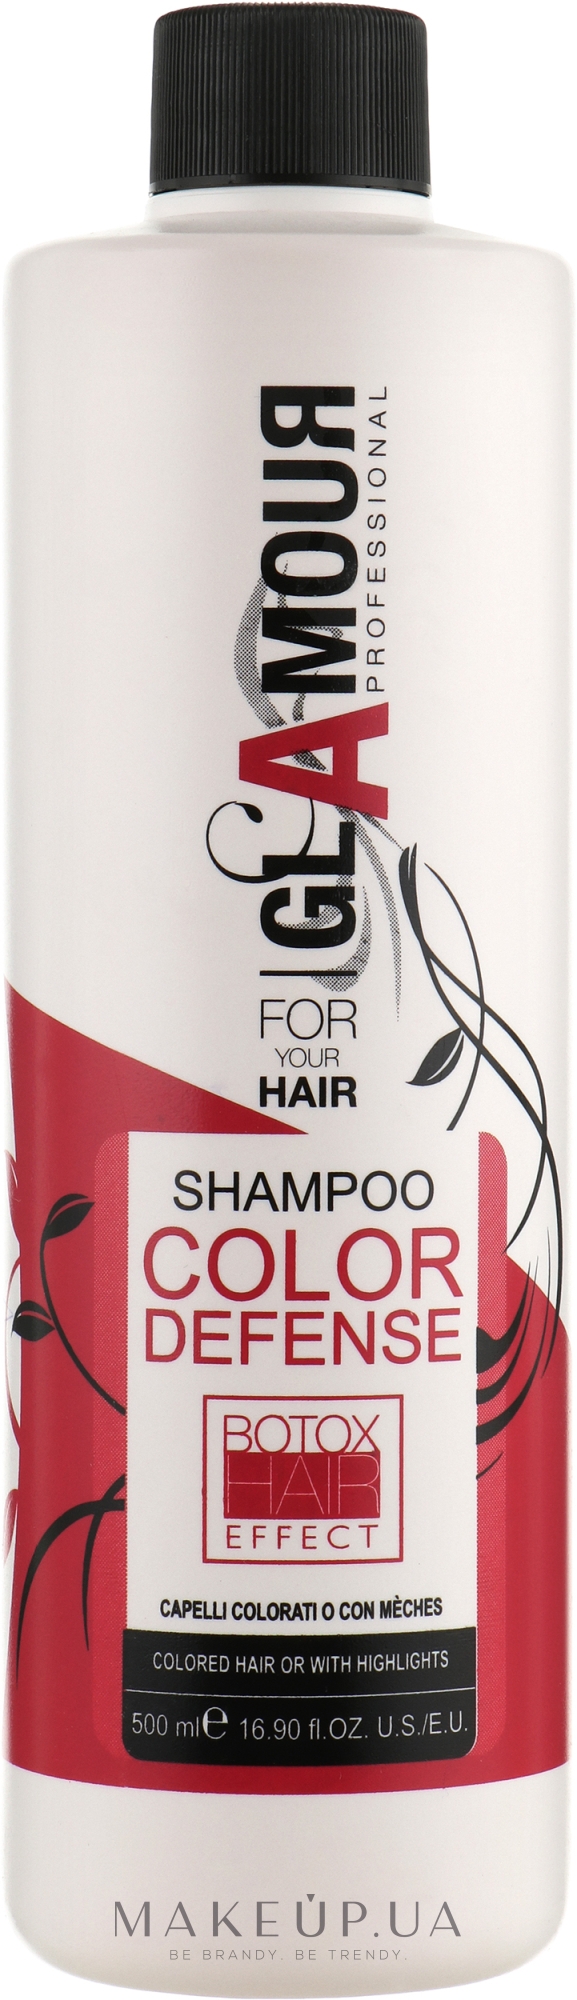 Шампунь для сохранения цвета окрашенных, осветленных и мелированных волос - Erreelle Italia Glamour Professional Shampoo Color Defense — фото 500ml